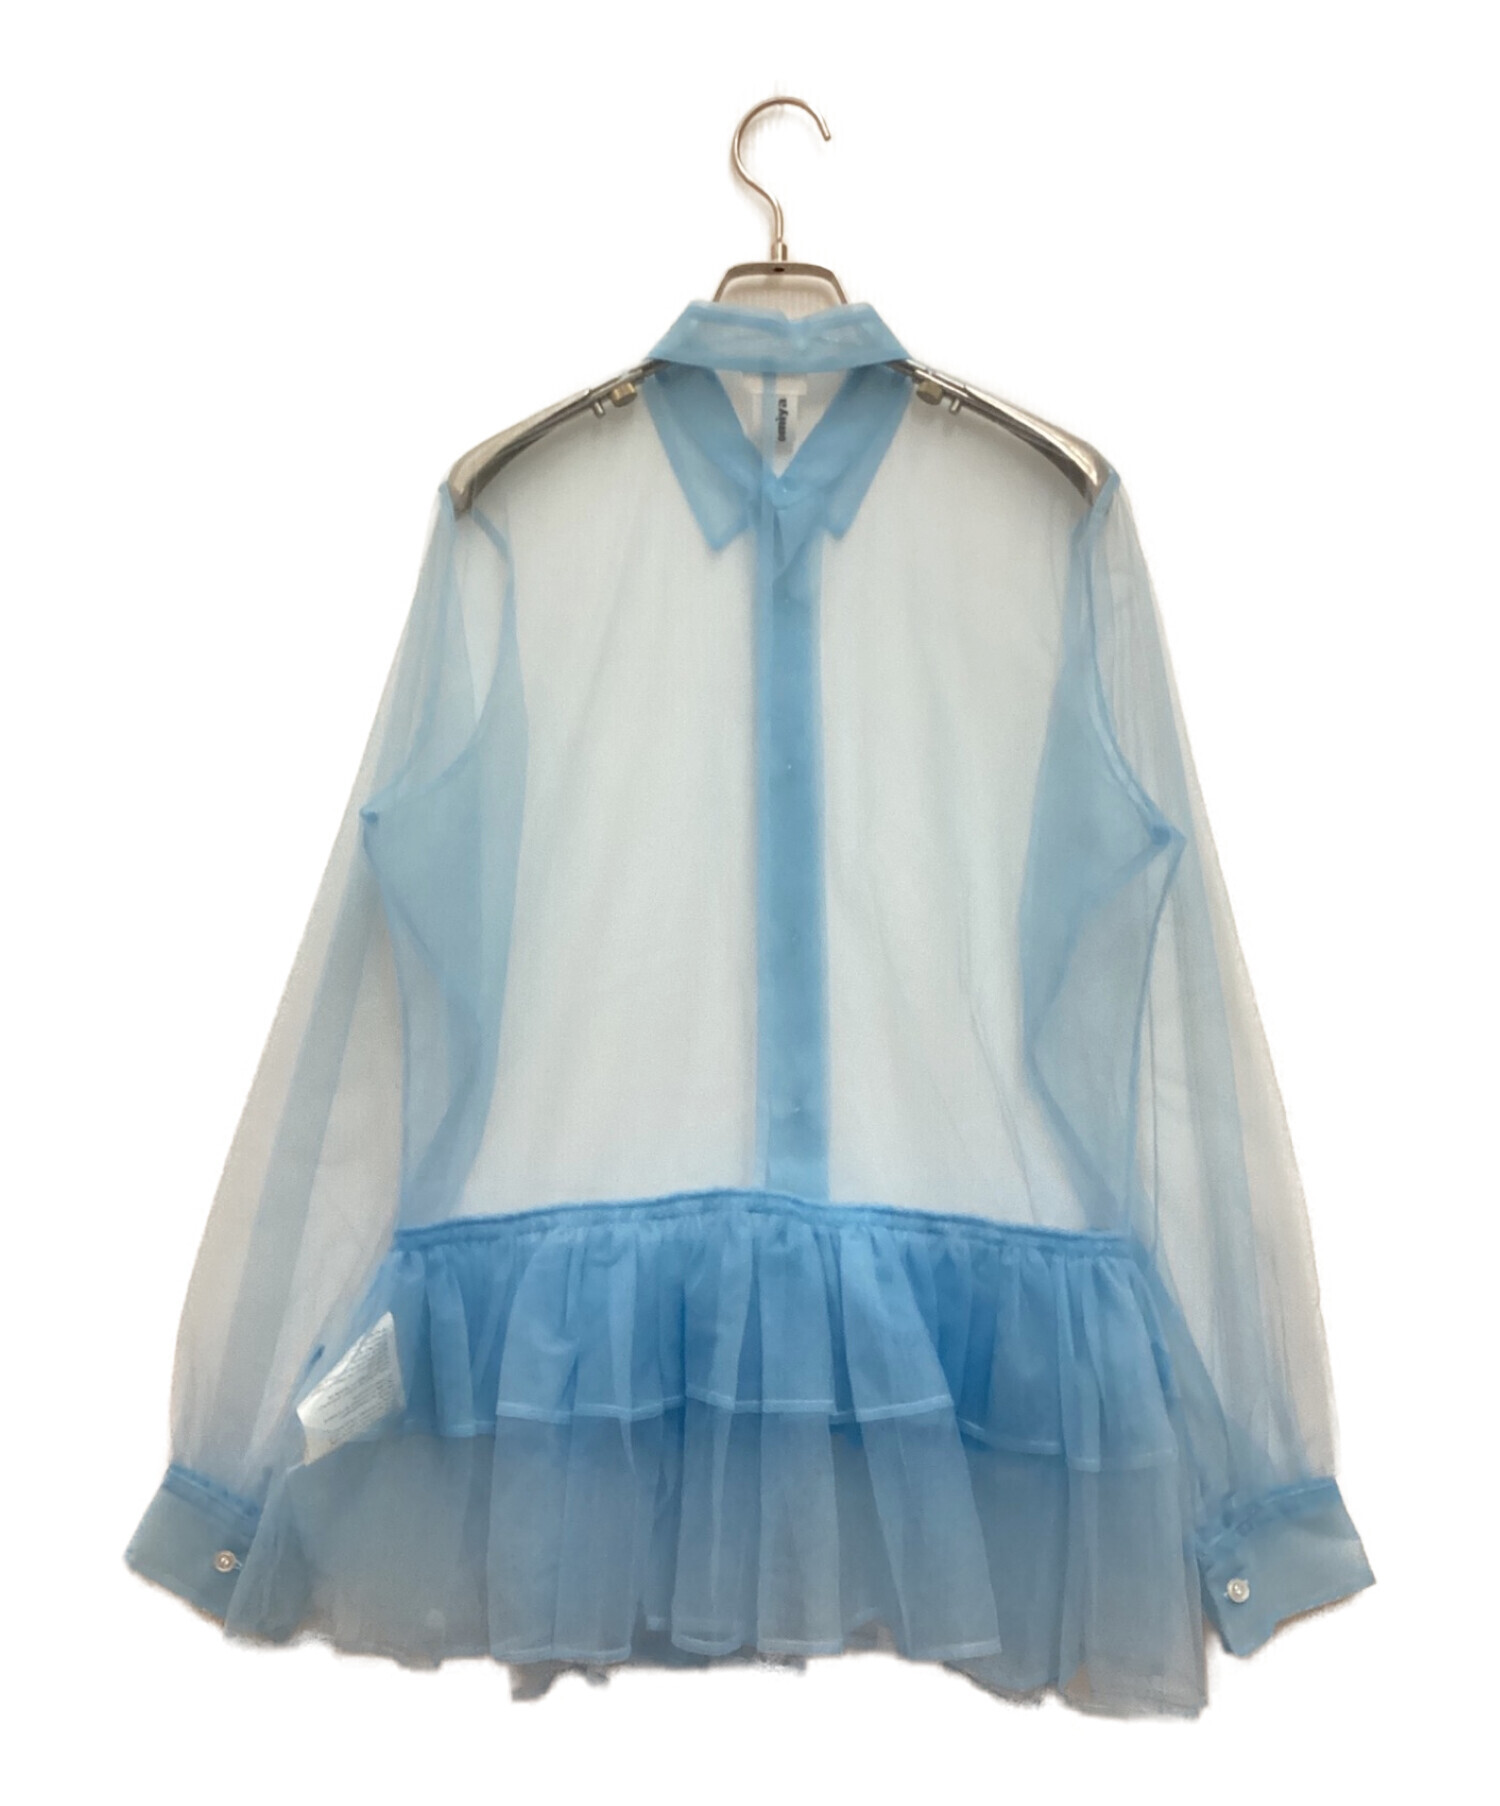 noir kei ninomiya (ノワール ケイ ニノミヤ) フリルデザインチュールシャツ ブルー サイズ:M